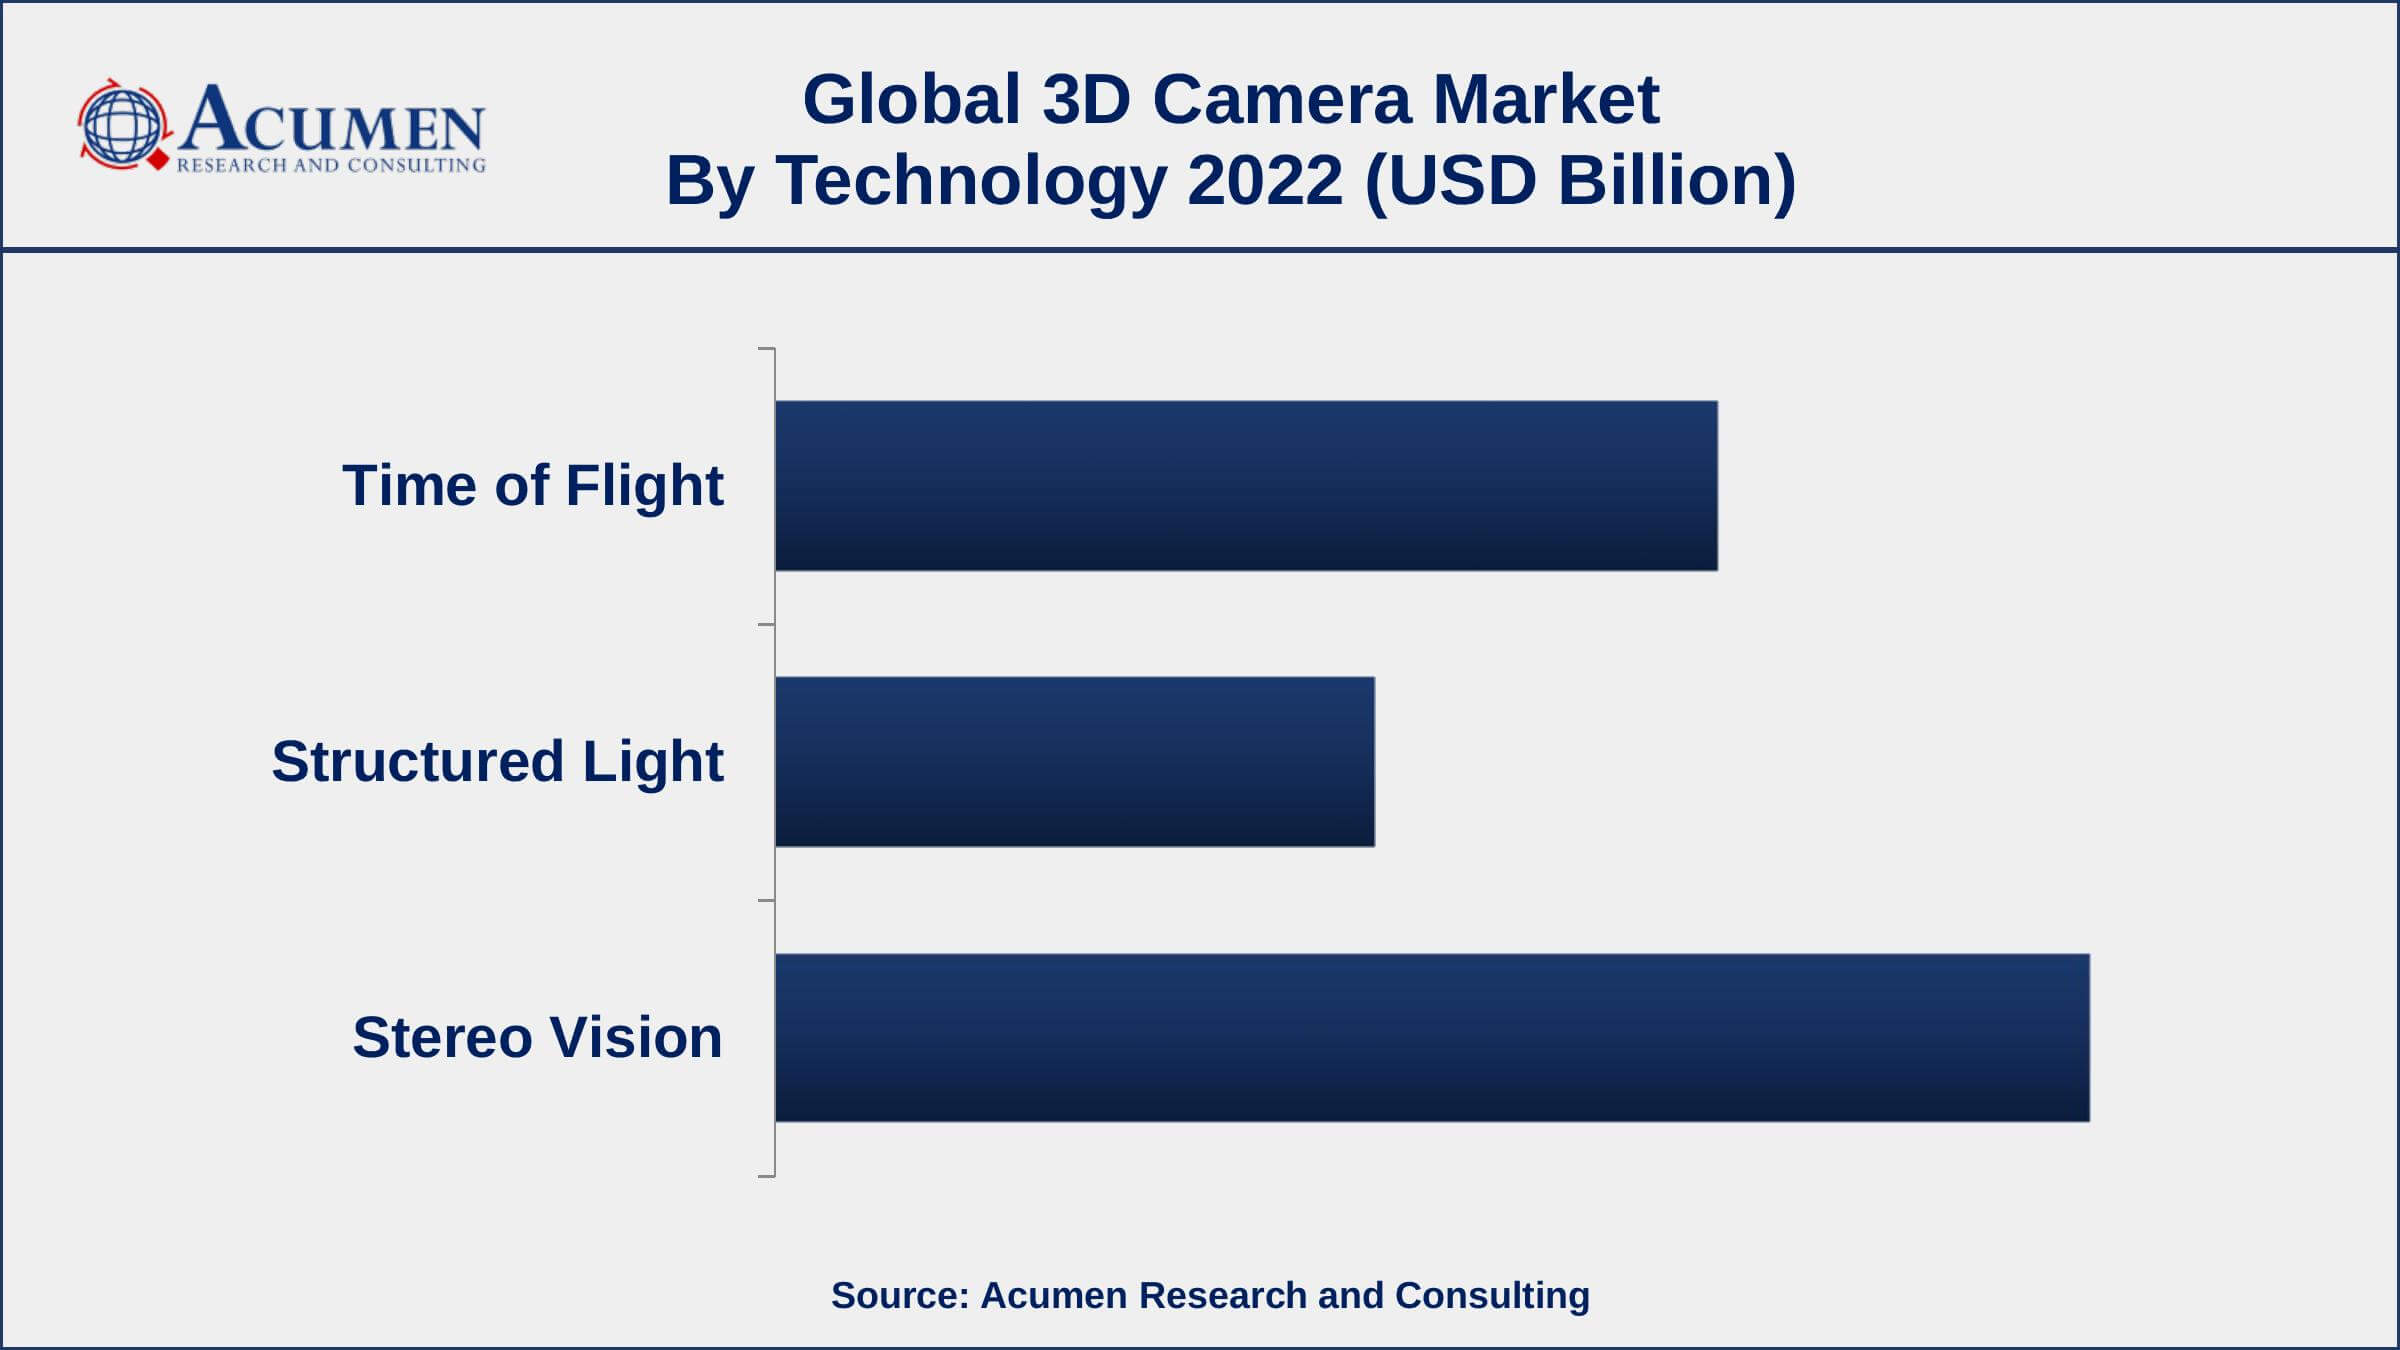 3D Camera Market Opportunities